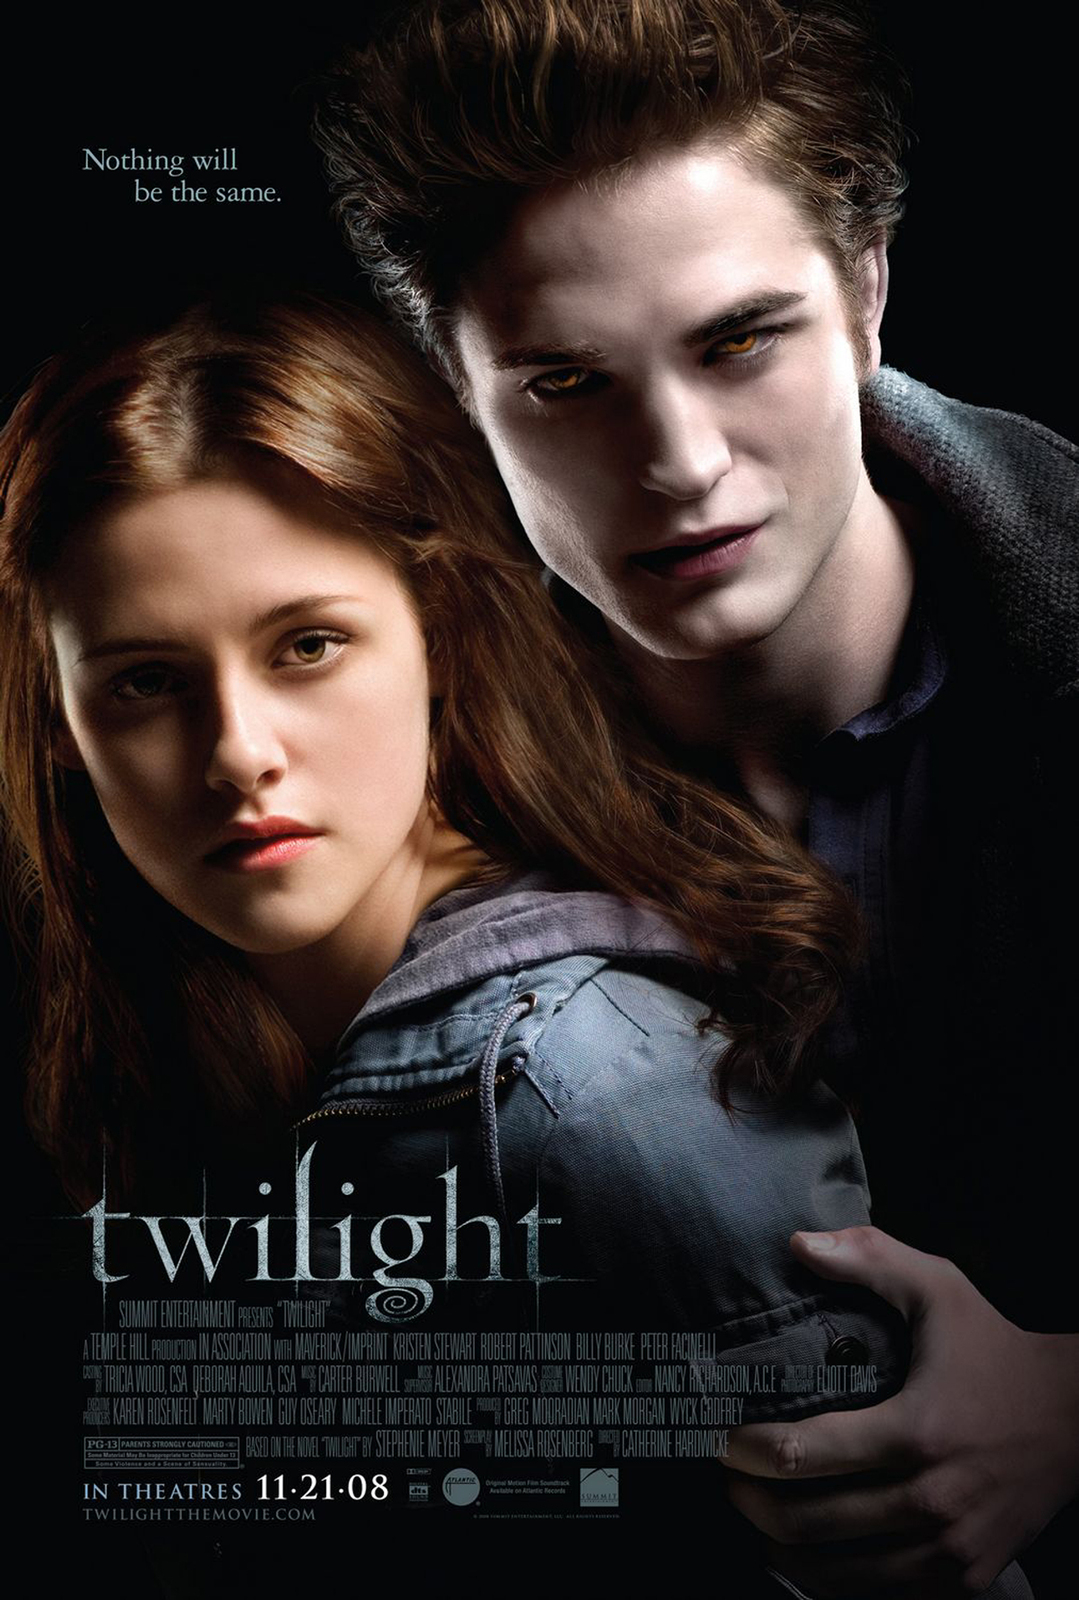 Twilight Movie Poster Art Film Print Size 11x17 14x21 24x36 27x40 32x48 #4